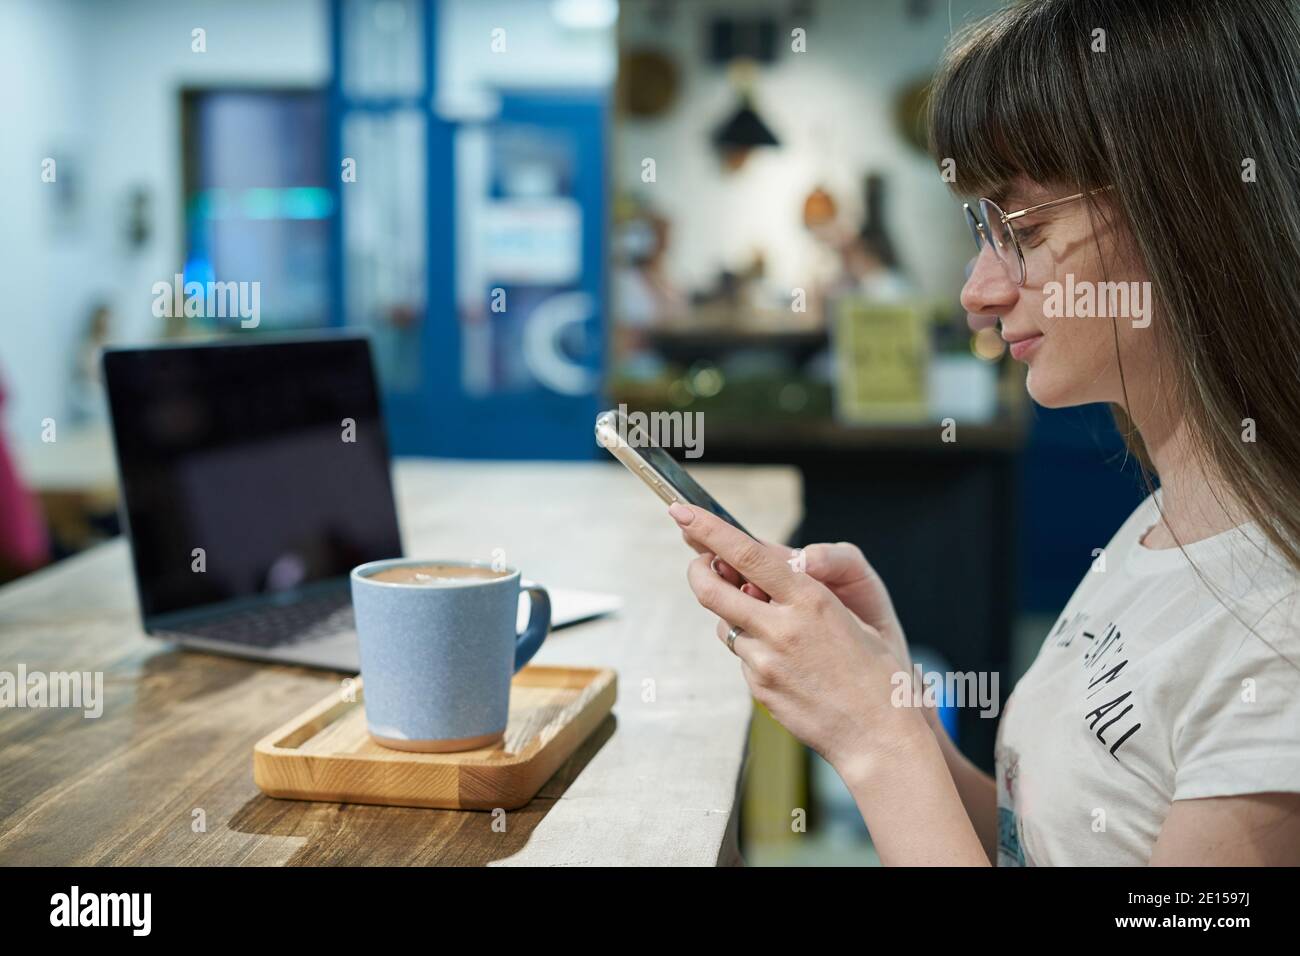 Junge Frau macht Fotos mit dem Smartphone von seinem Kaffee in Becher zum Bloggen Stockfoto